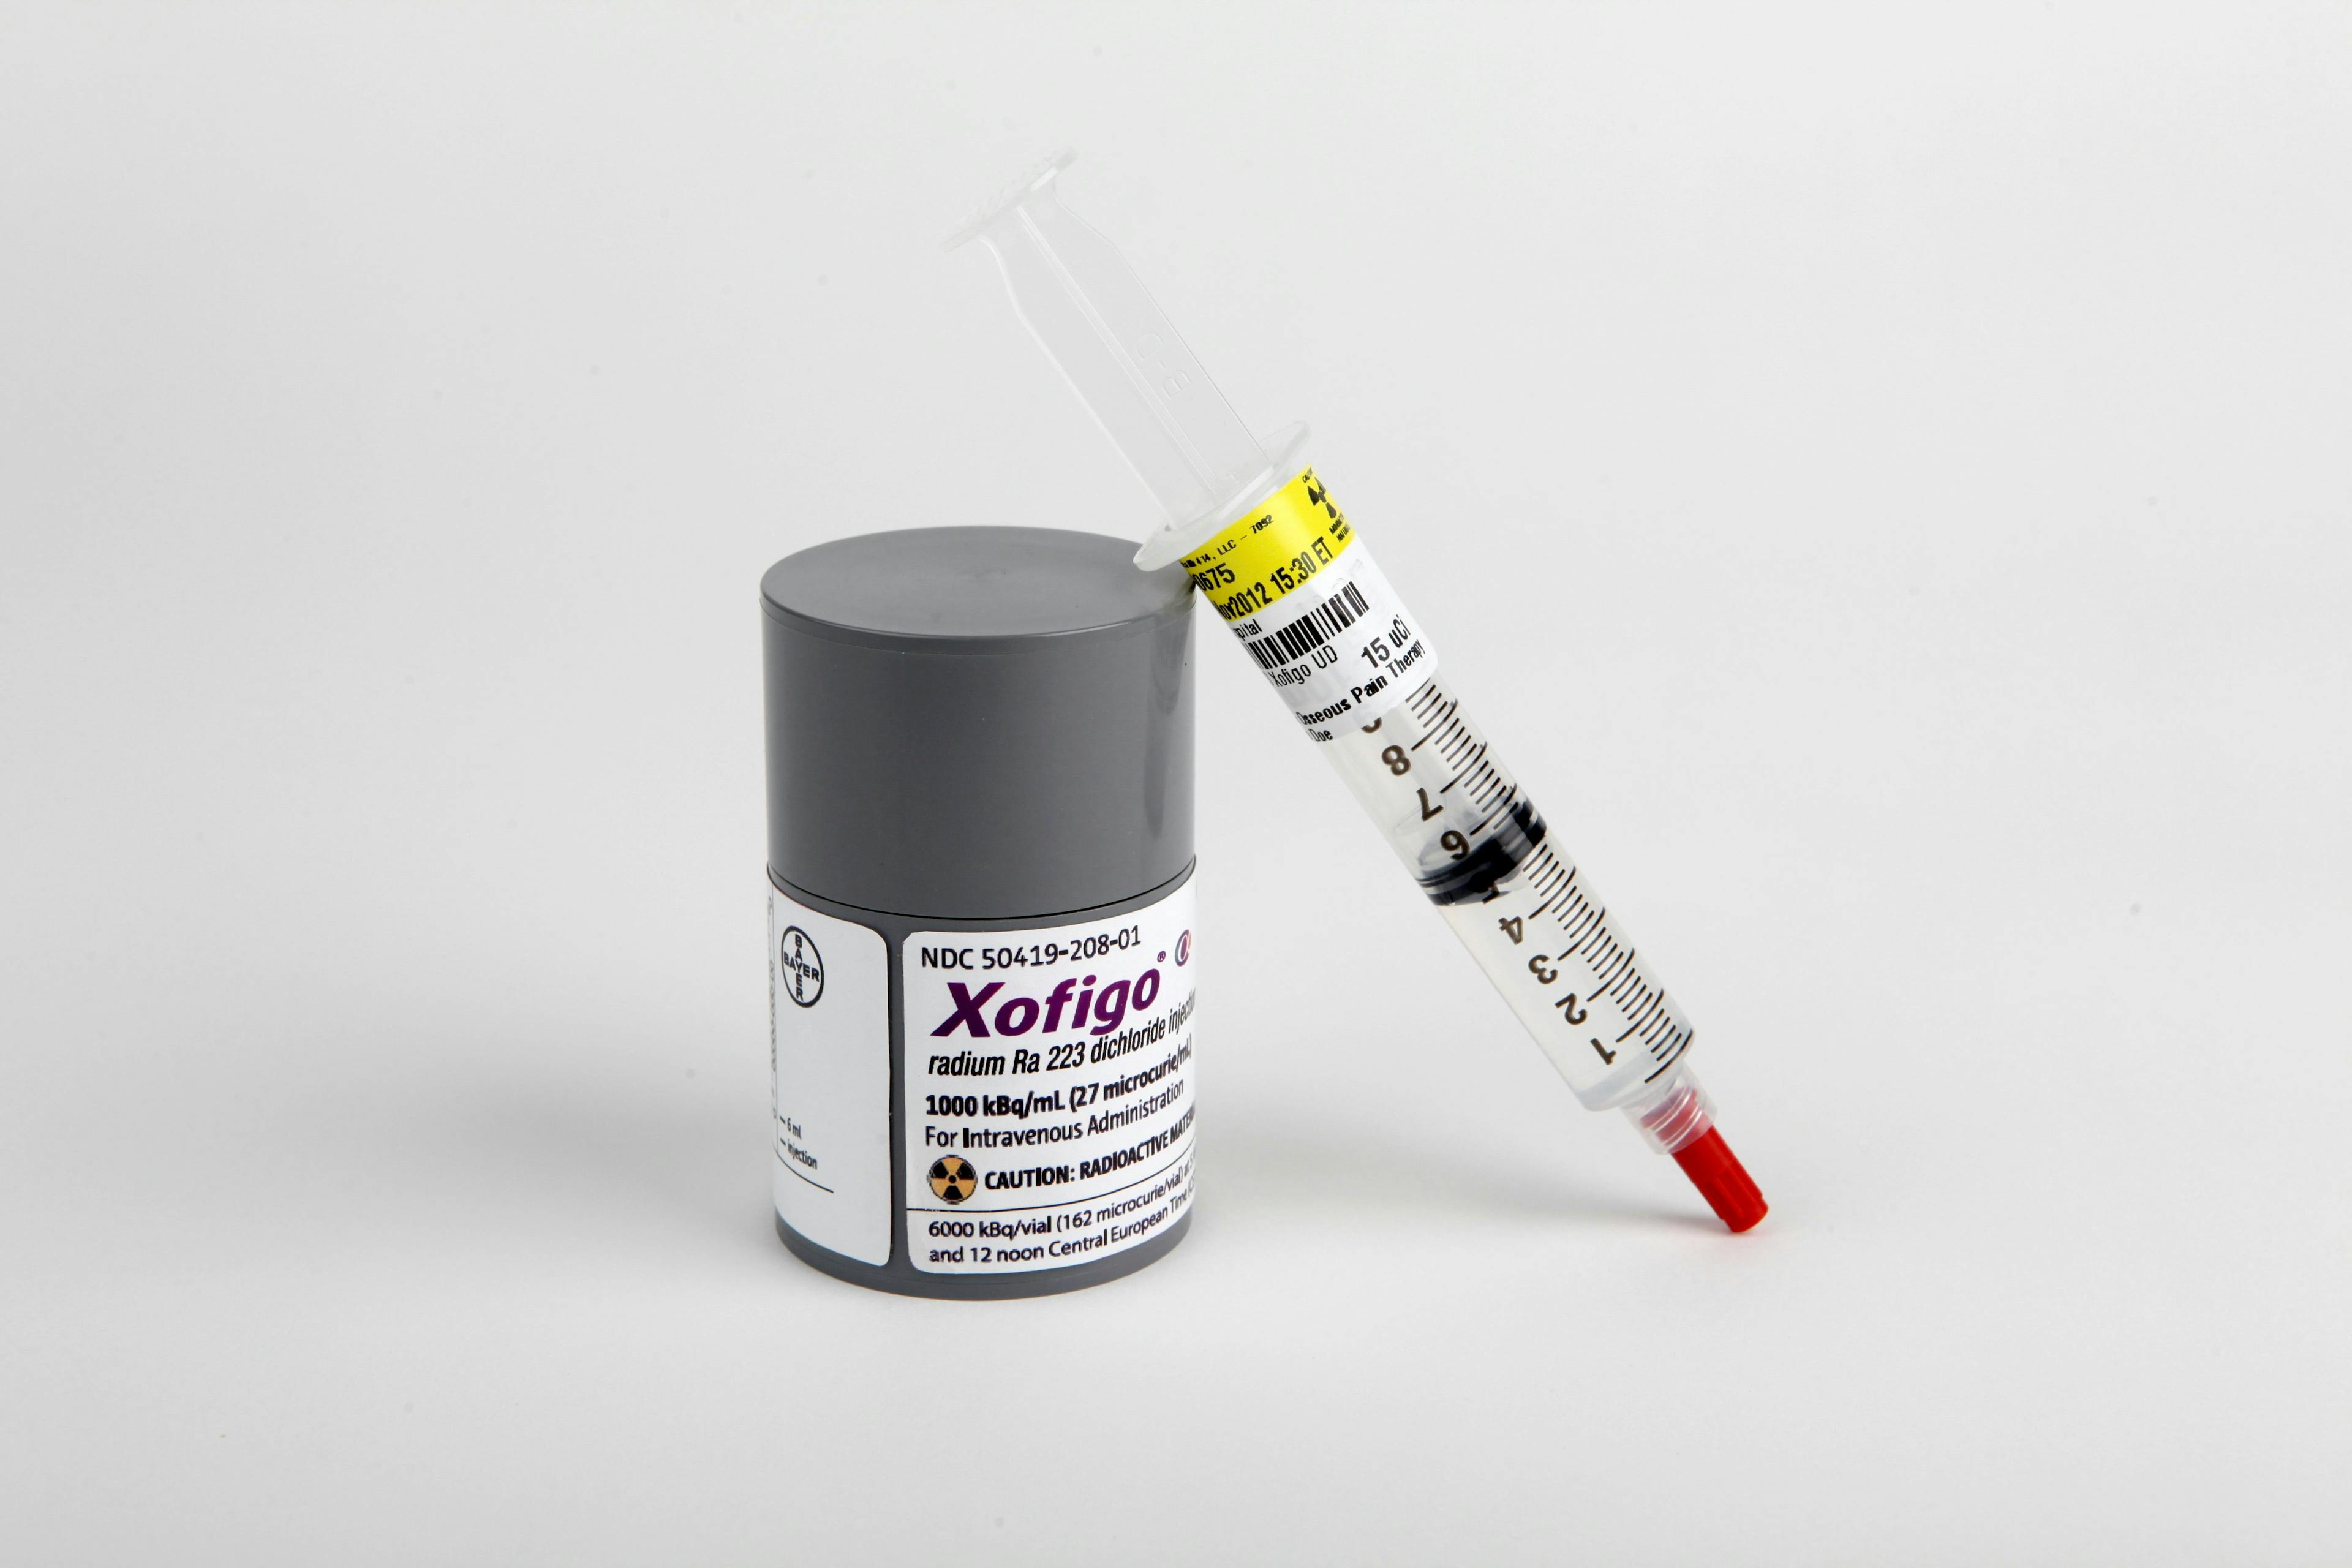 Xofigo_Case-Upright-Syringe1.jpg